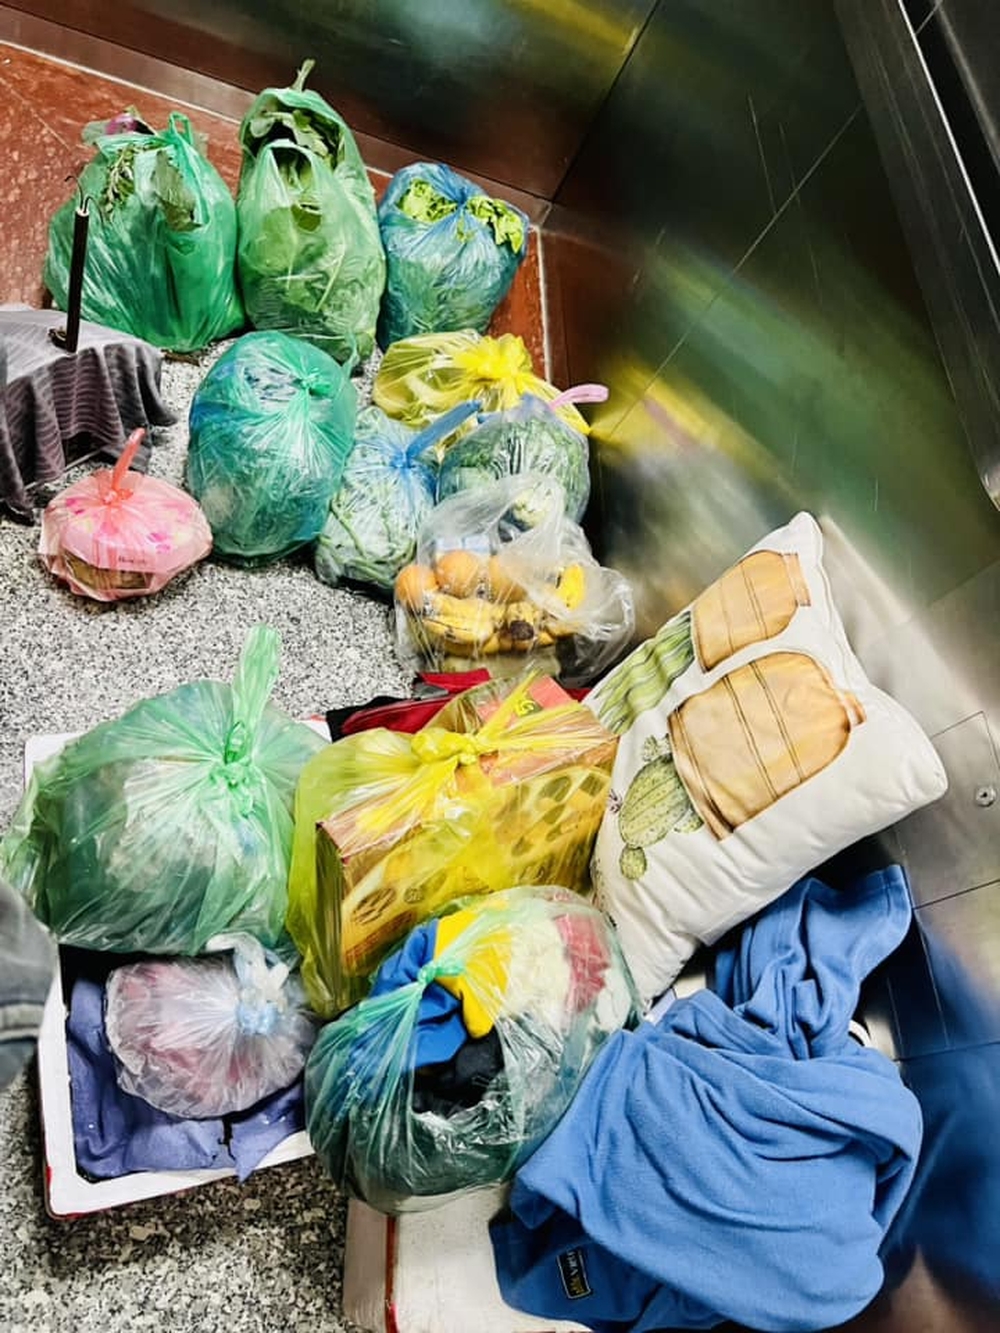 Trở lại thành phố sau Tết, sinh viên khoe được bố mẹ gói cả chợ quê trong balo theo cùng, đồ ăn chất như đống núi - Ảnh 3.